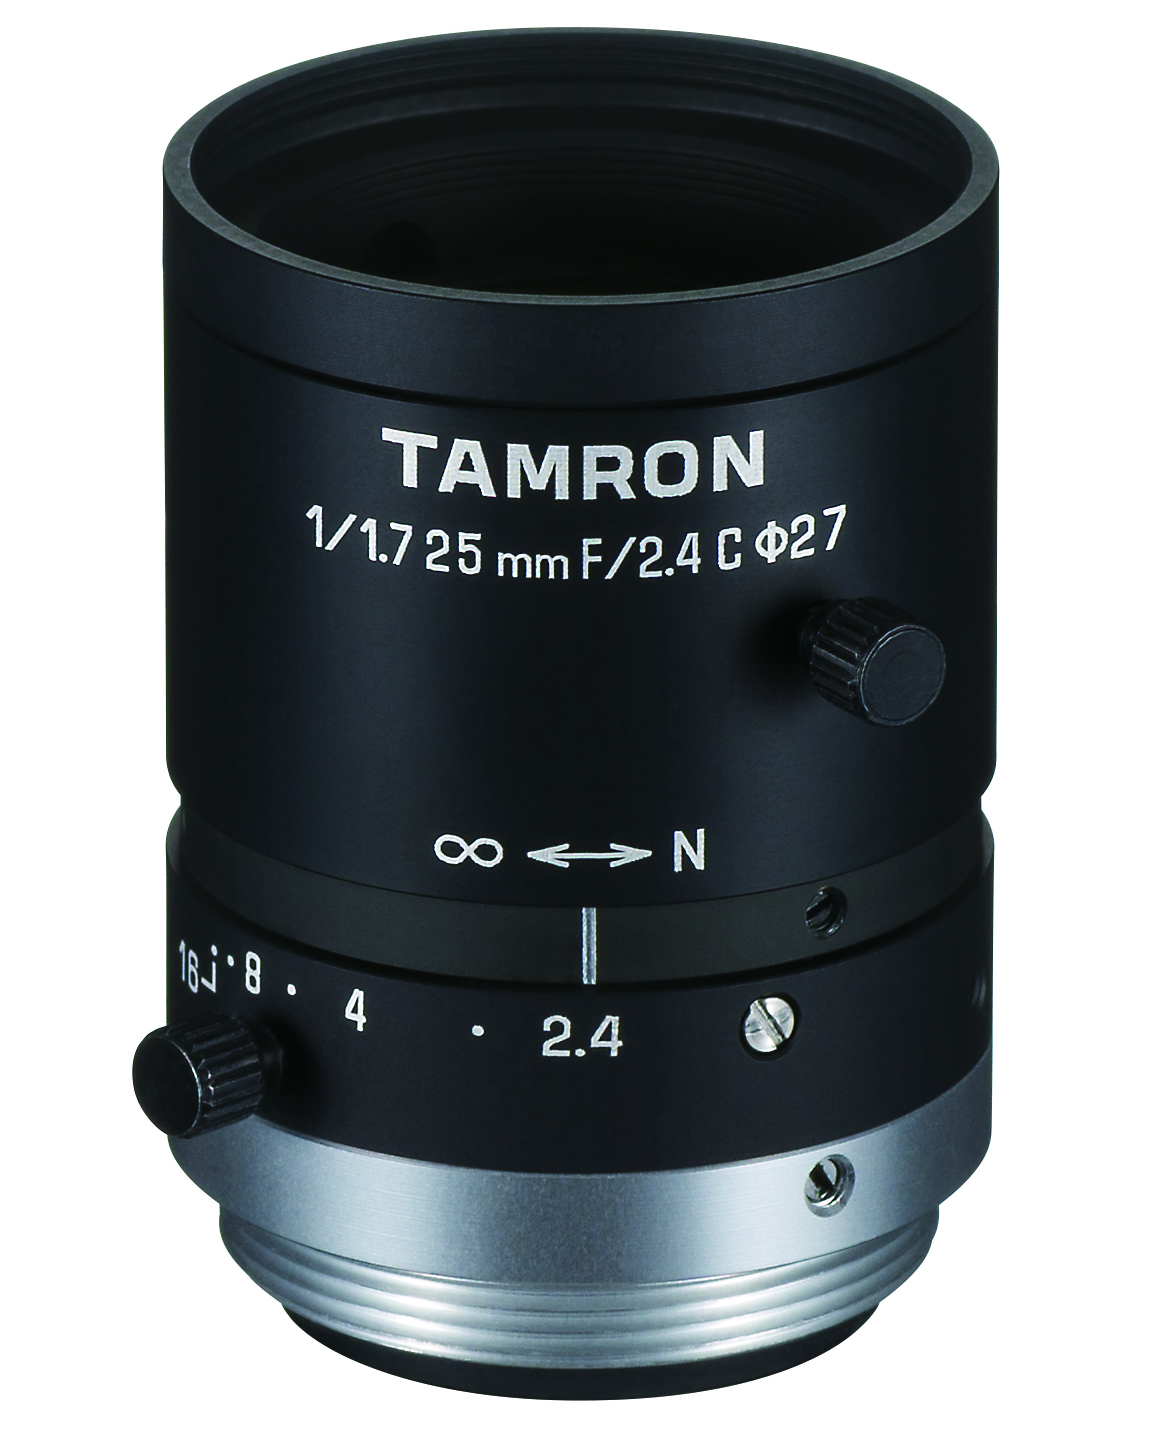 lens: Model M117FM25